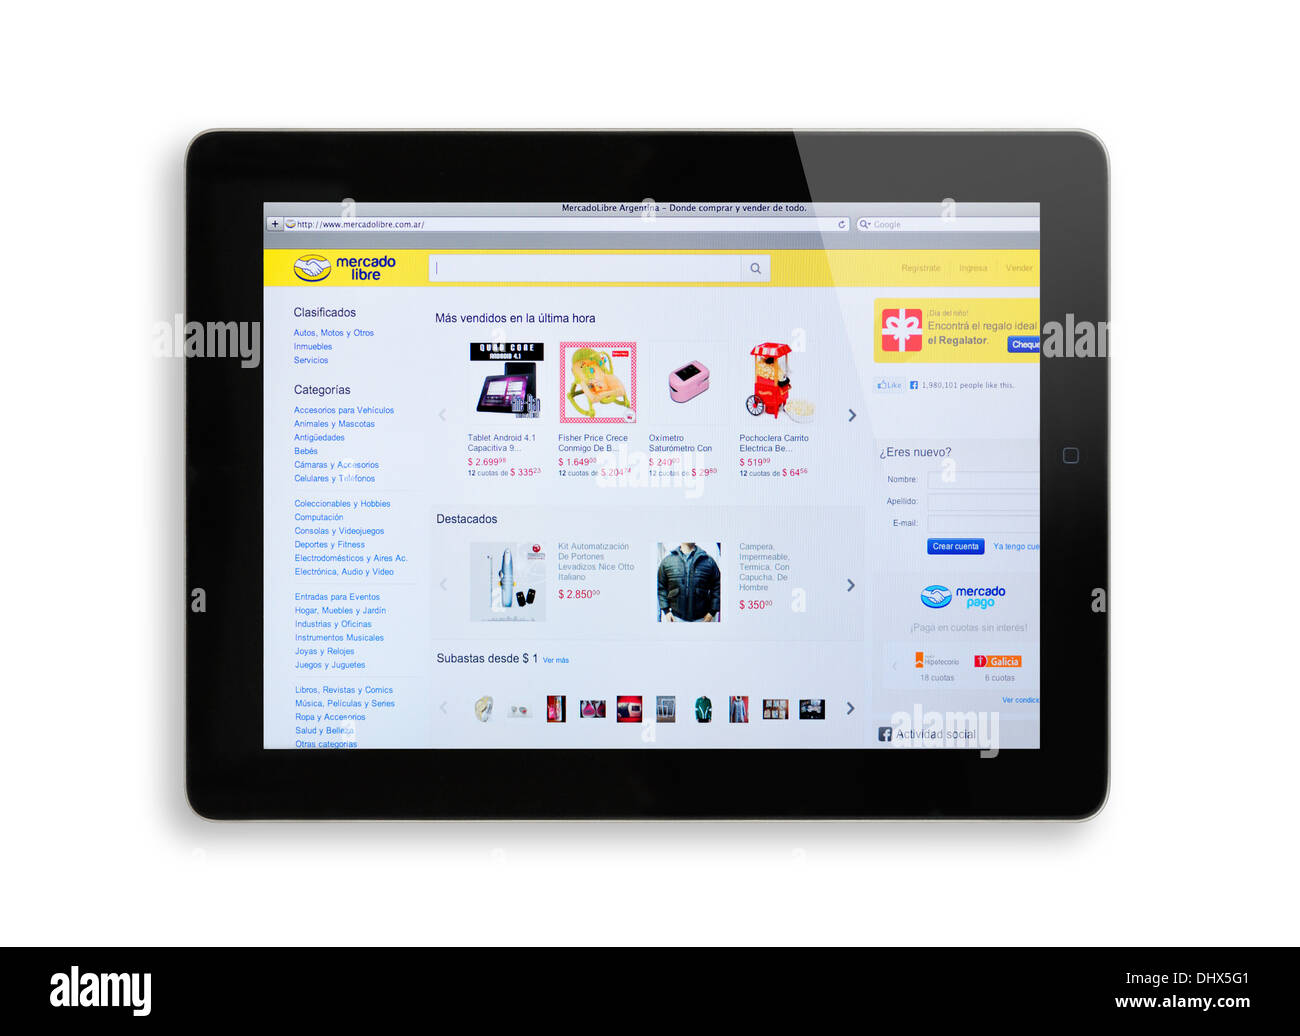 Mercado Libre online shopping website on iPad screen Stock Photo